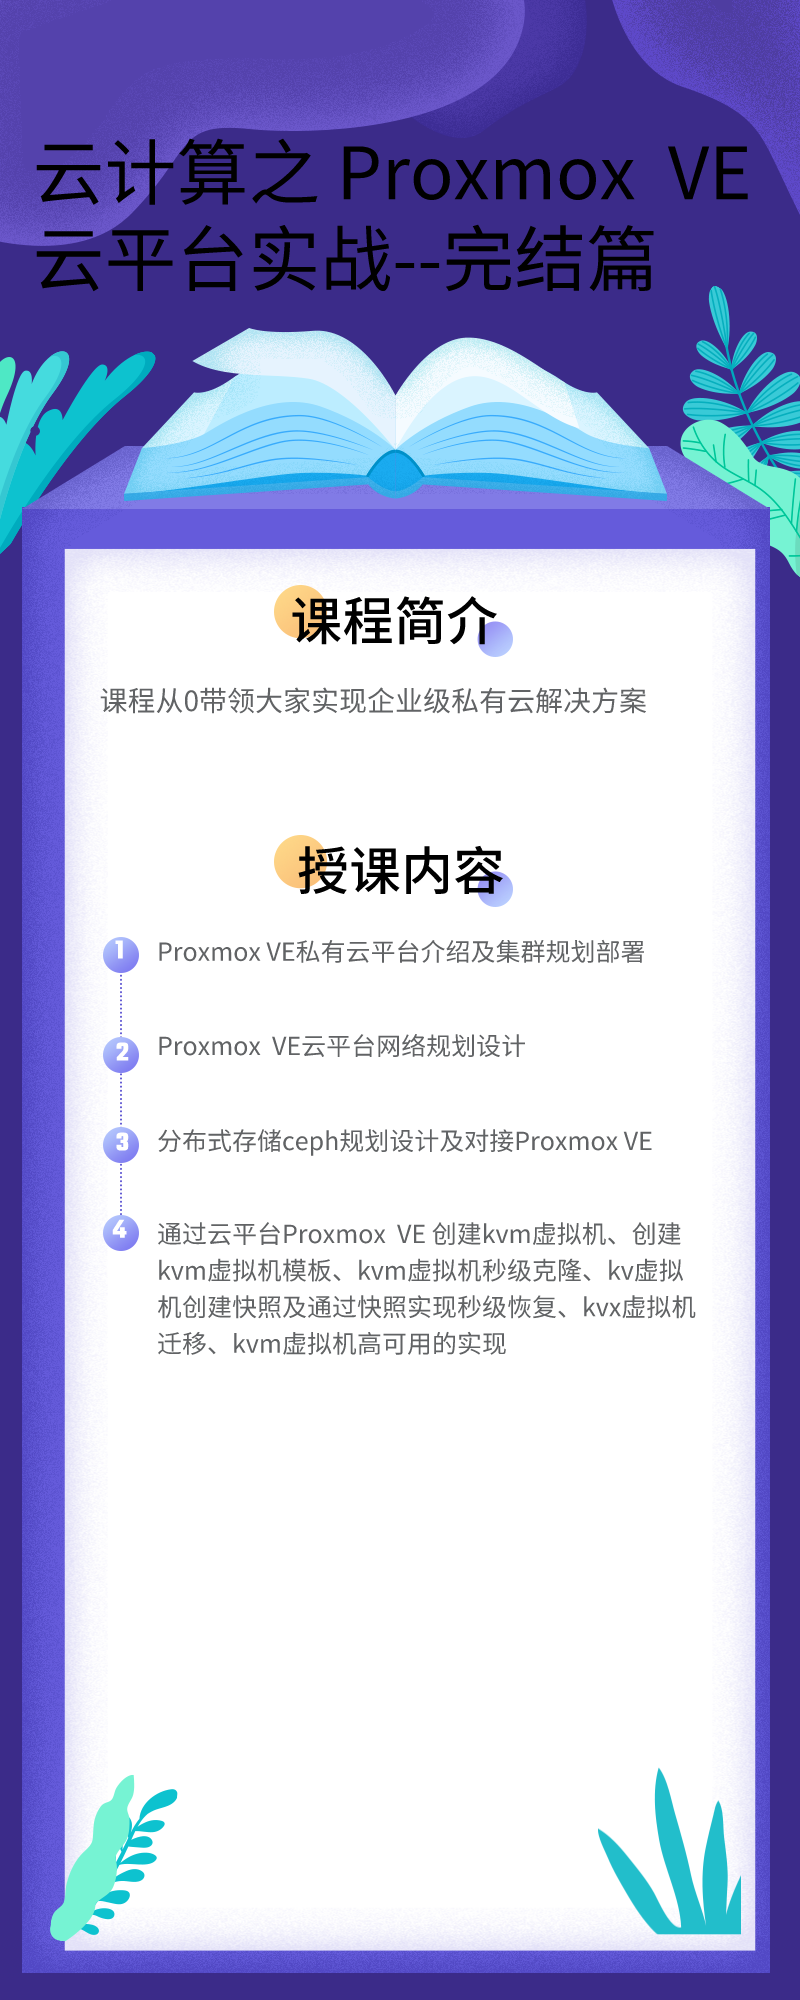 云计算之+Proxmox+VE云平台实战_自定义px_2020-12-16-0 (1).png